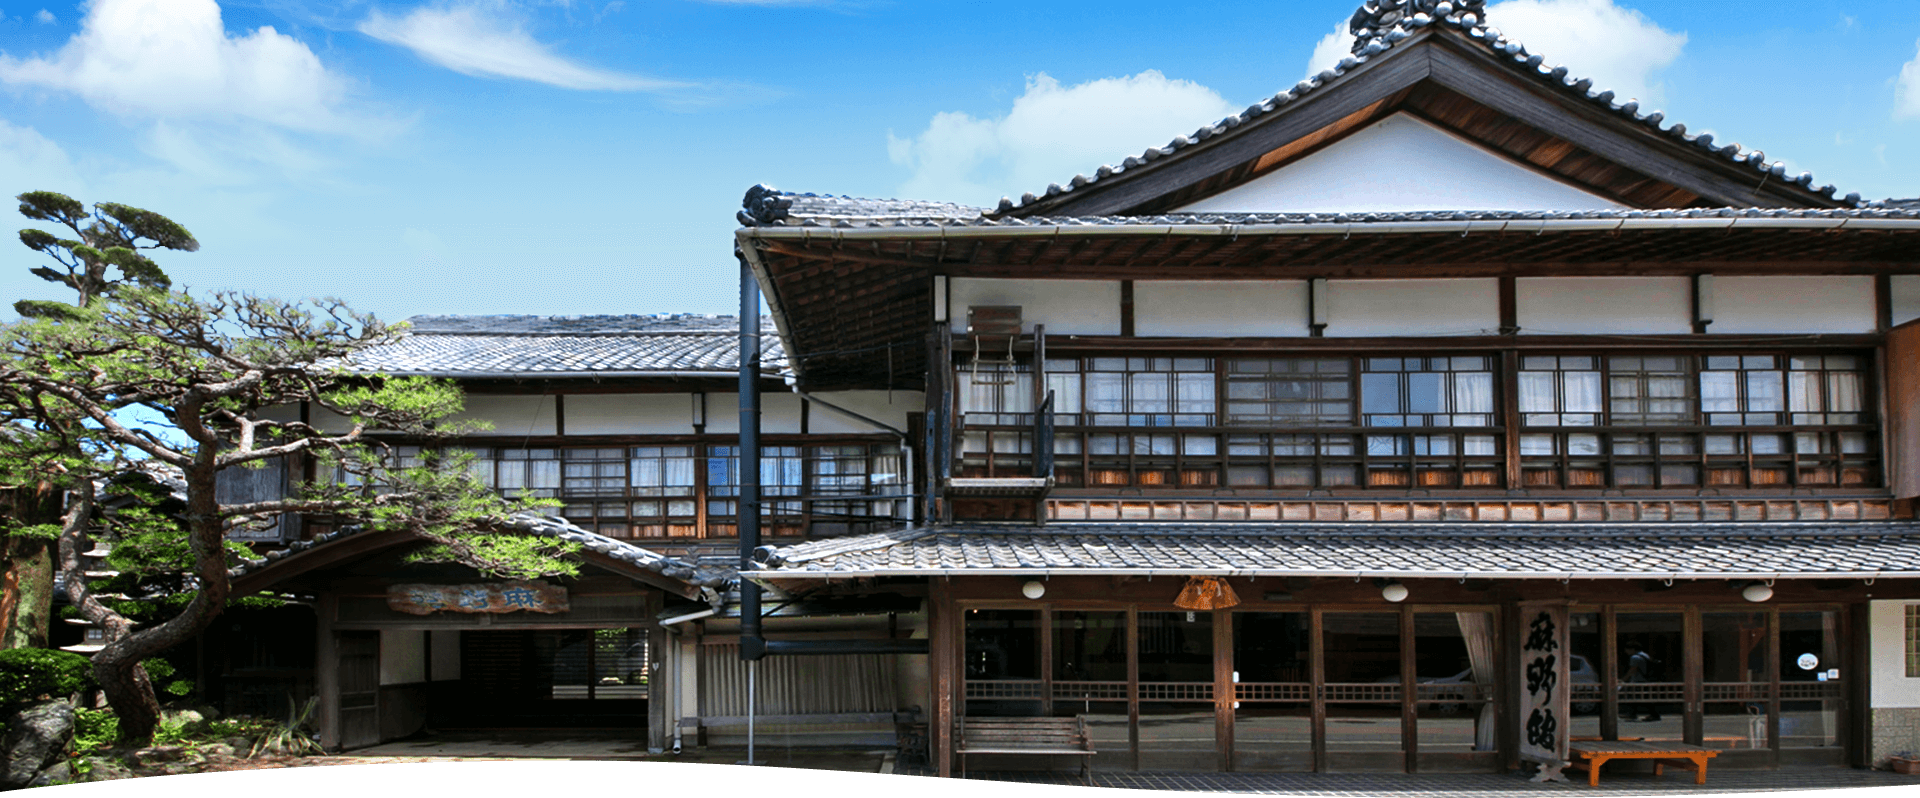 อาซาโนะคัง สร้างขึ้นเมื่อปีค.ศ.1893 เป็นเรียวคังหรือโรงแรมแบบญี่ปุ่นอันเก่าแก่ที่ตั้งอยู่ในเมืองอิเสะ จังหวัดมิเอะ ให้ความสำคัญกับความเป็นญี่ปุ่น